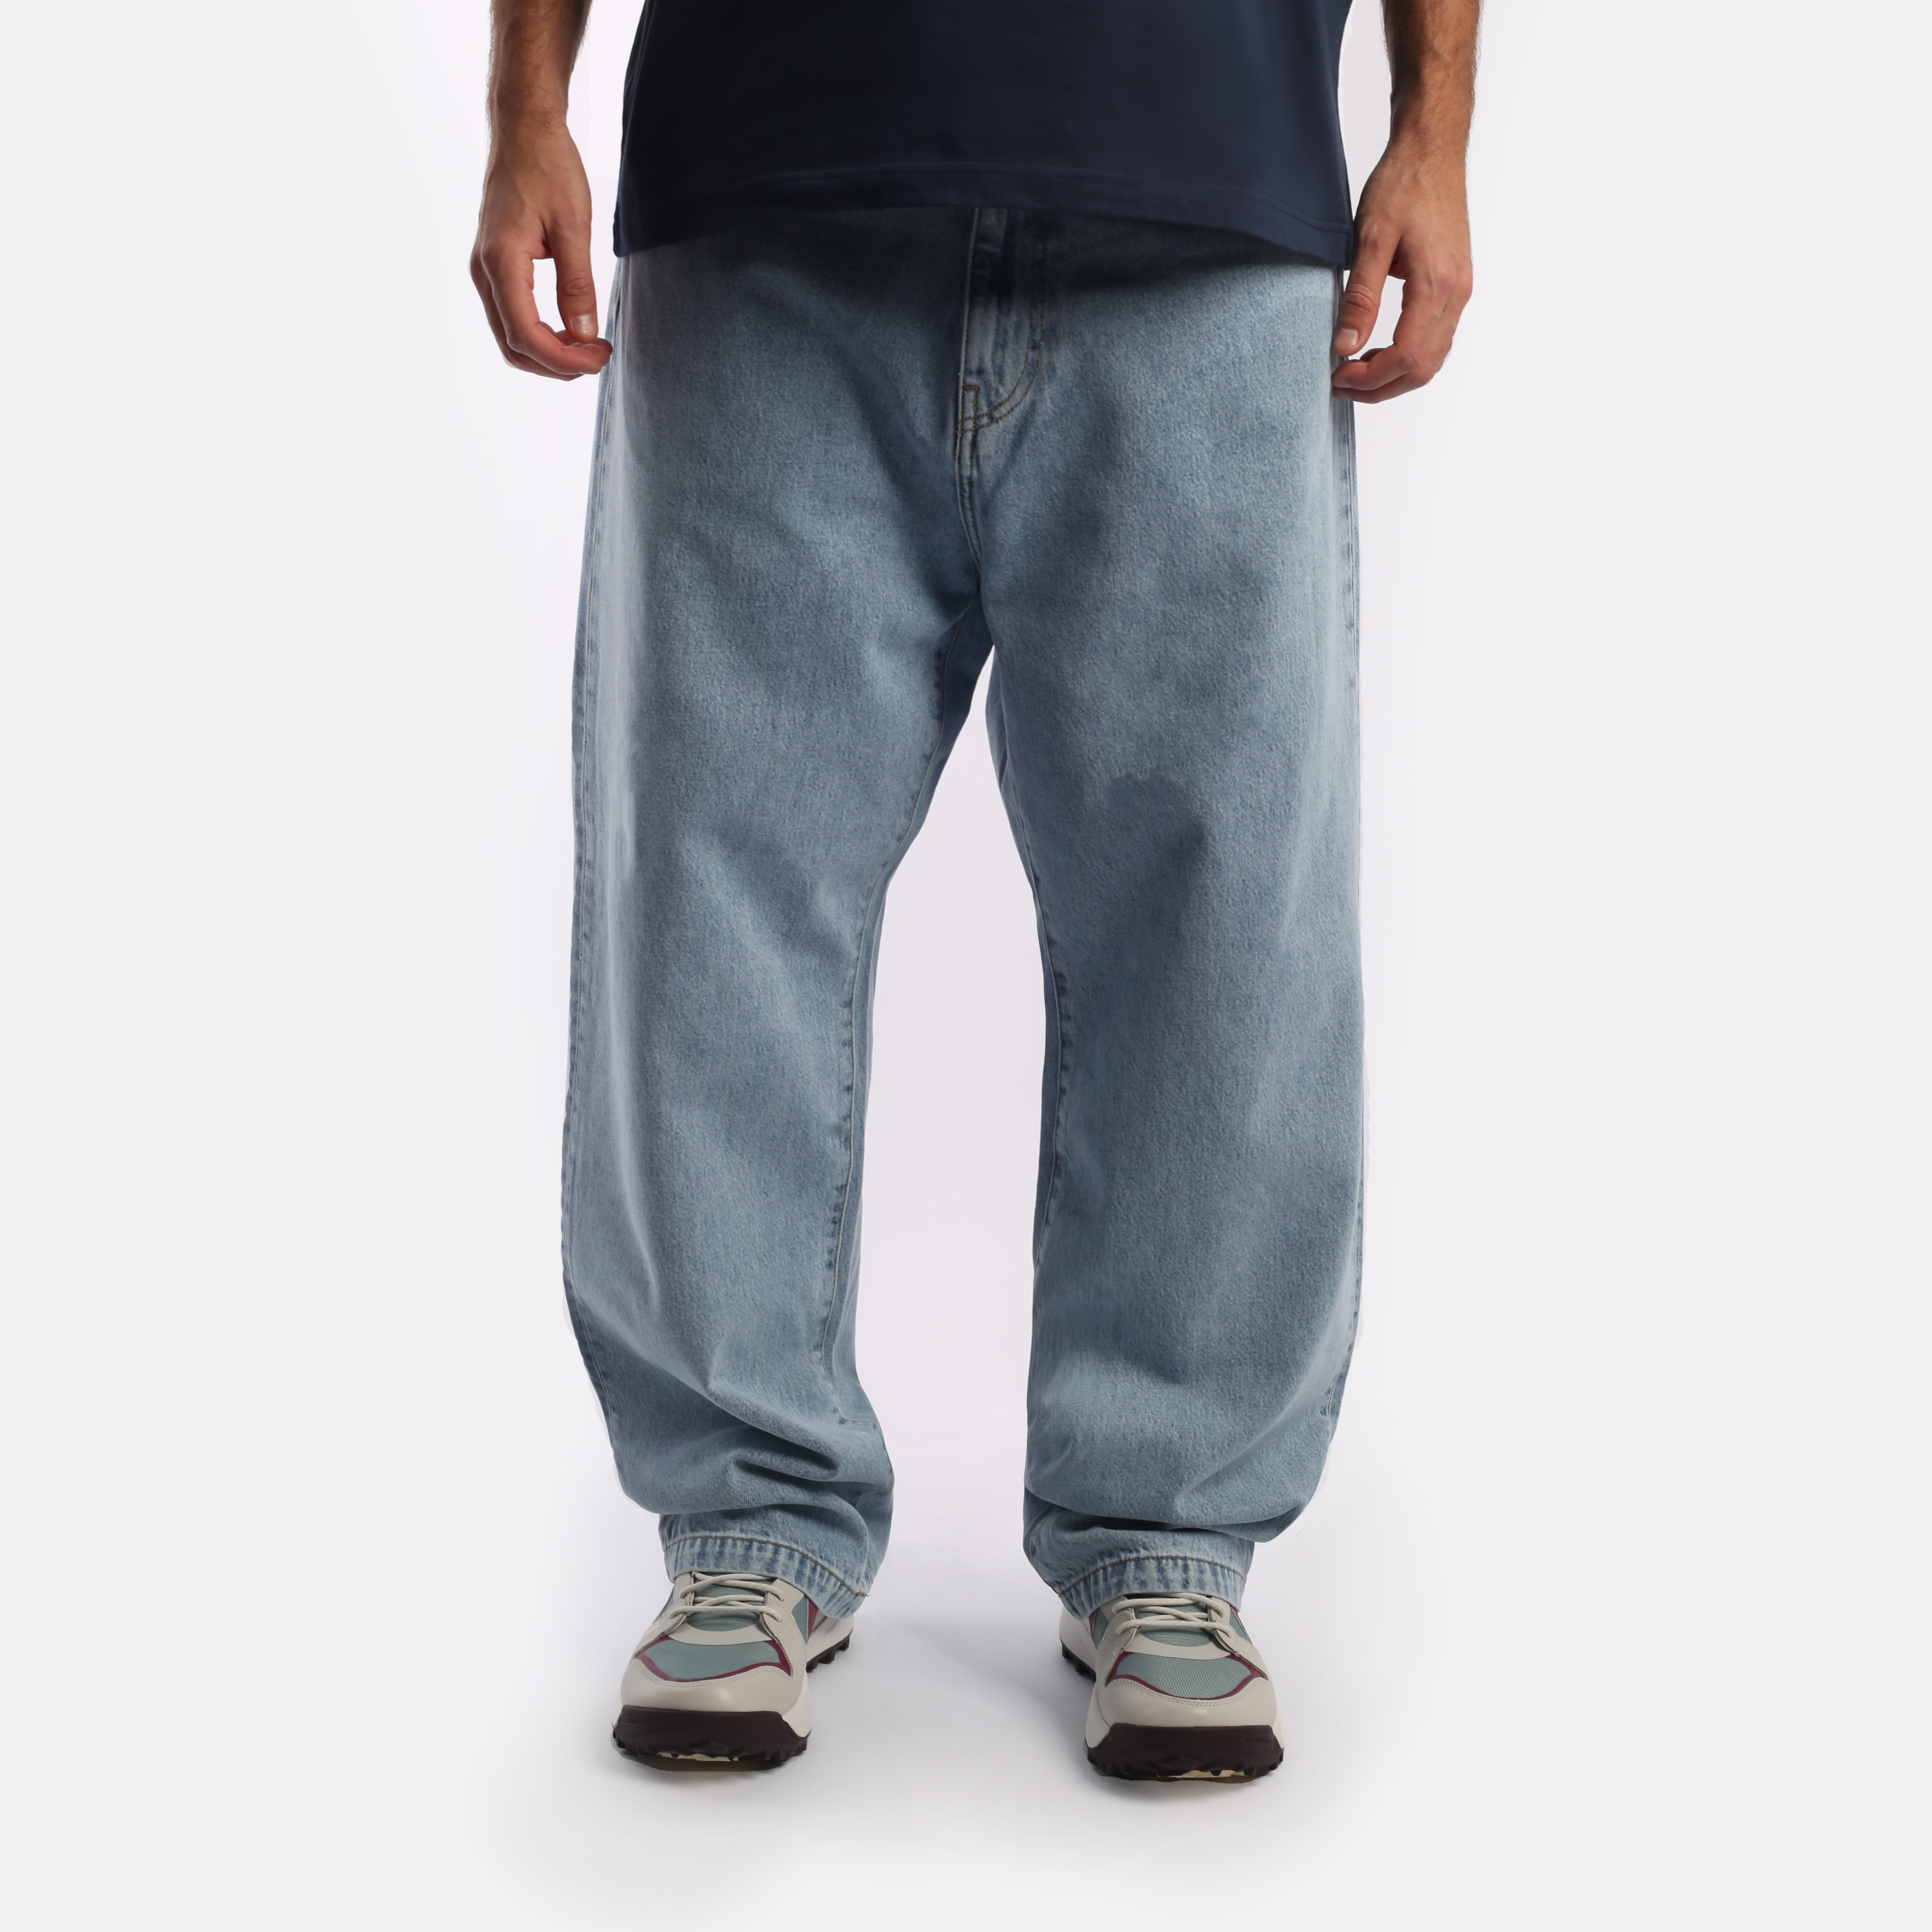 мужские голубые брюки Carhartt WIP Robertson I030468-blue - цена, описание, фото 1